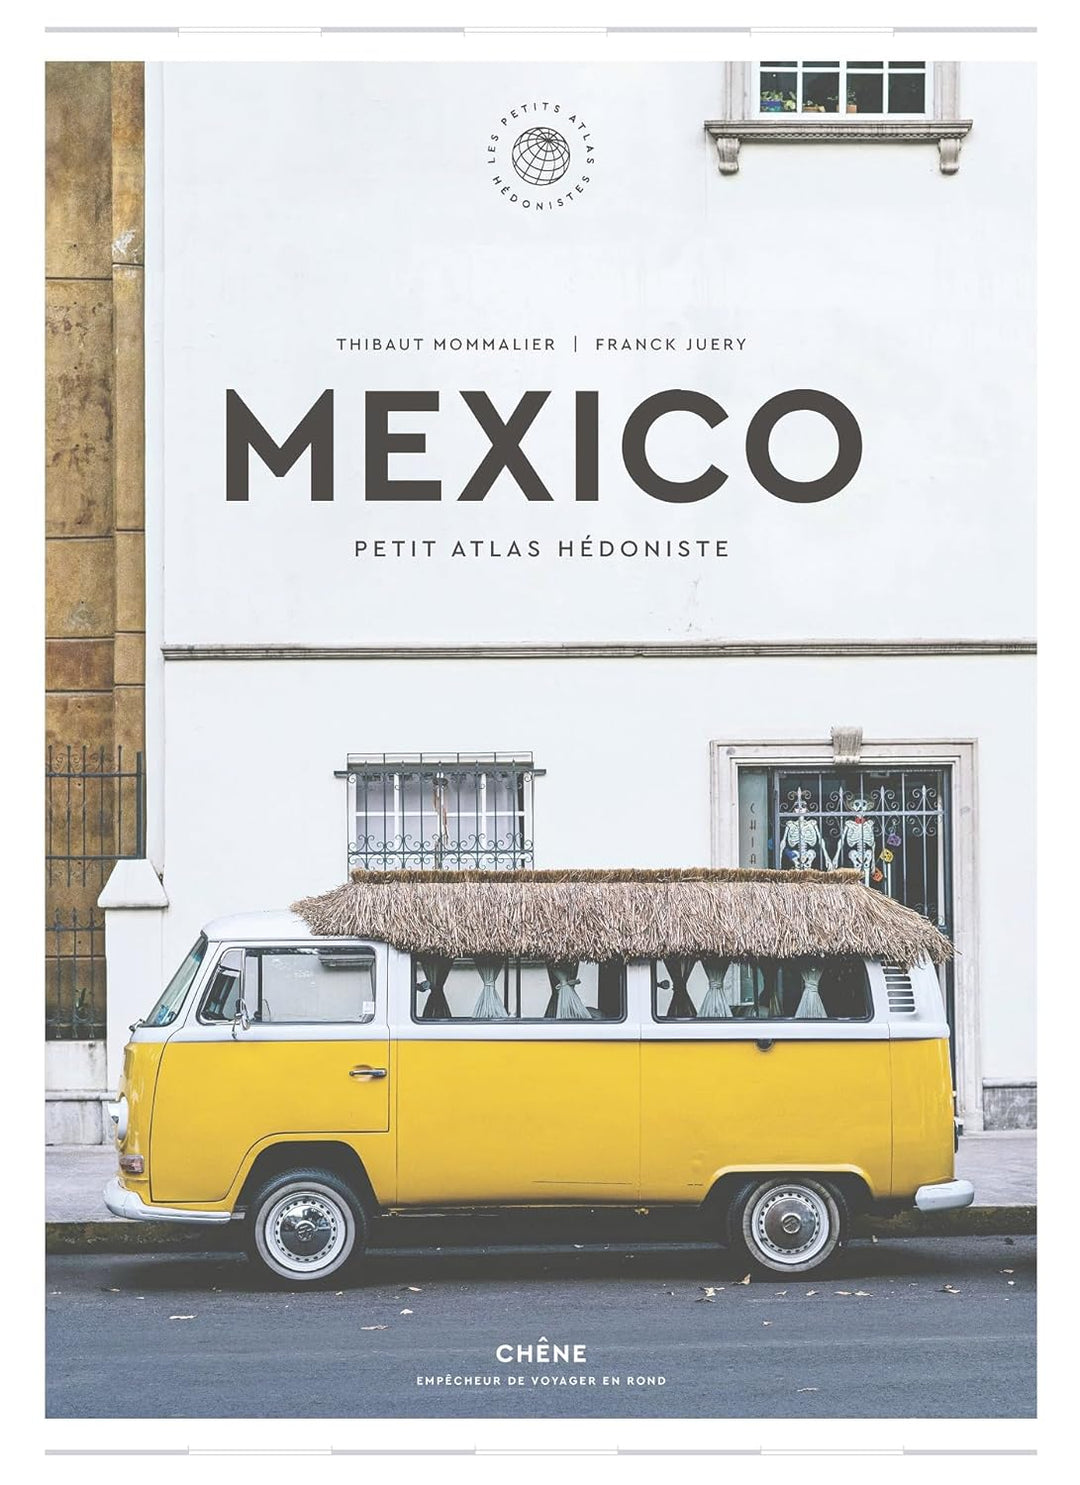 Beautiful book - Mexico: Petit Atlas Hédoniste